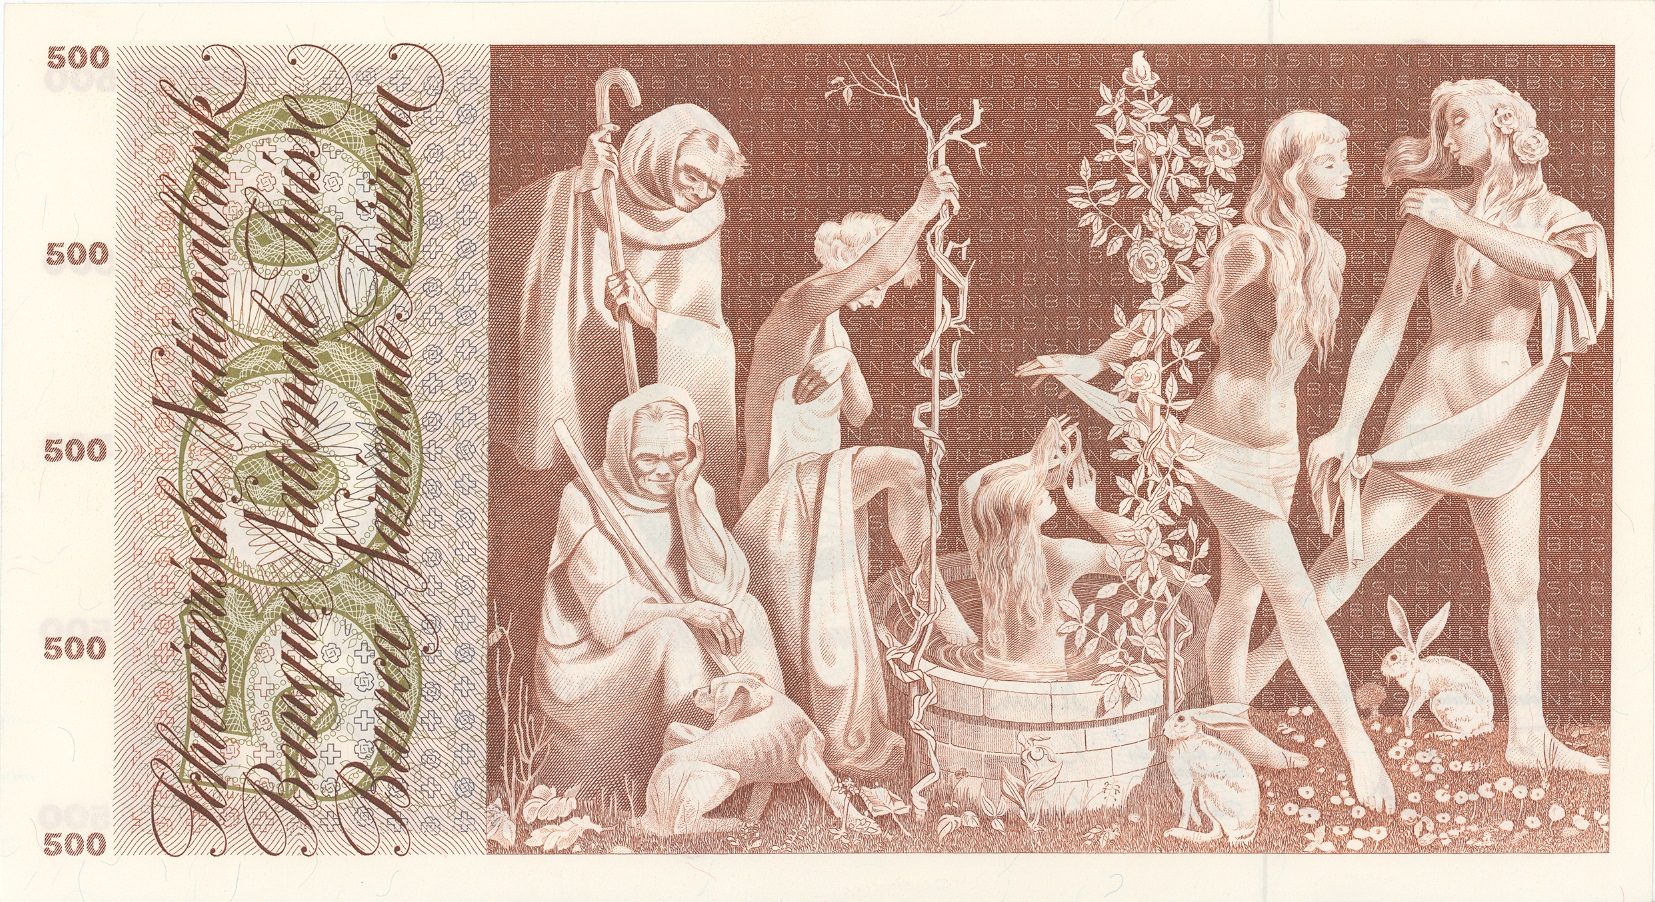 5. Banknotenserie 1956, 500-Franken-Note, Rückseite